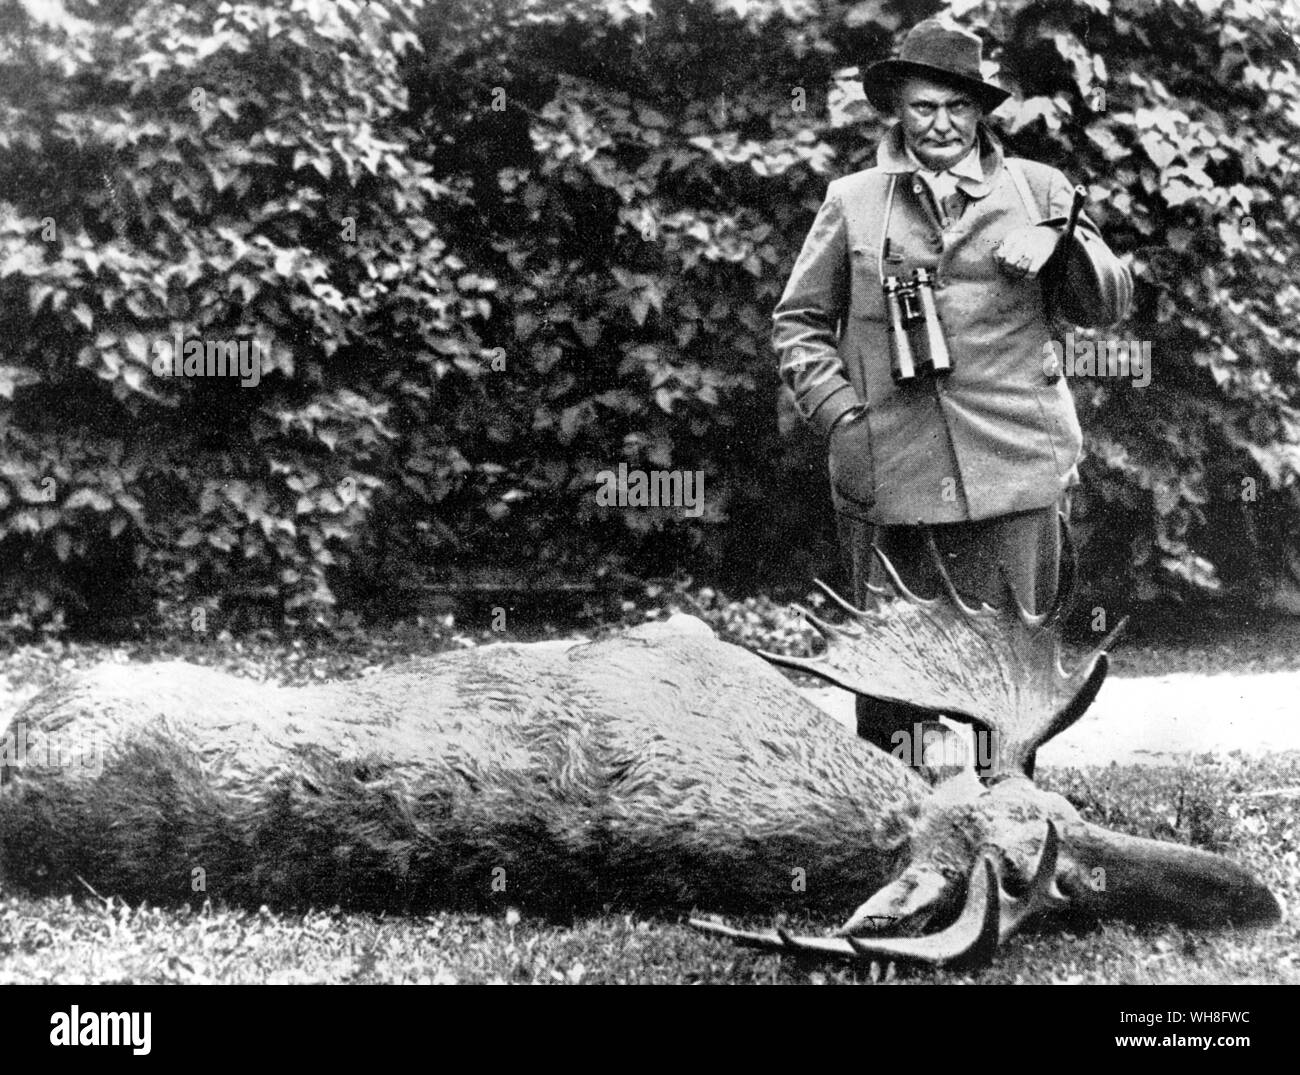 Hermann Goering comme un chasseur, à côté d'un grand cerf qu'il a chassés et tués. Hermann Wilhelm Göring (ou Goering en anglais) (1893-1946) a été l'un des premiers membres du parti nazi, commandant de la Luftwaffe, et l'un des principaux dirigeants de l'Allemagne nazie. . . . Banque D'Images